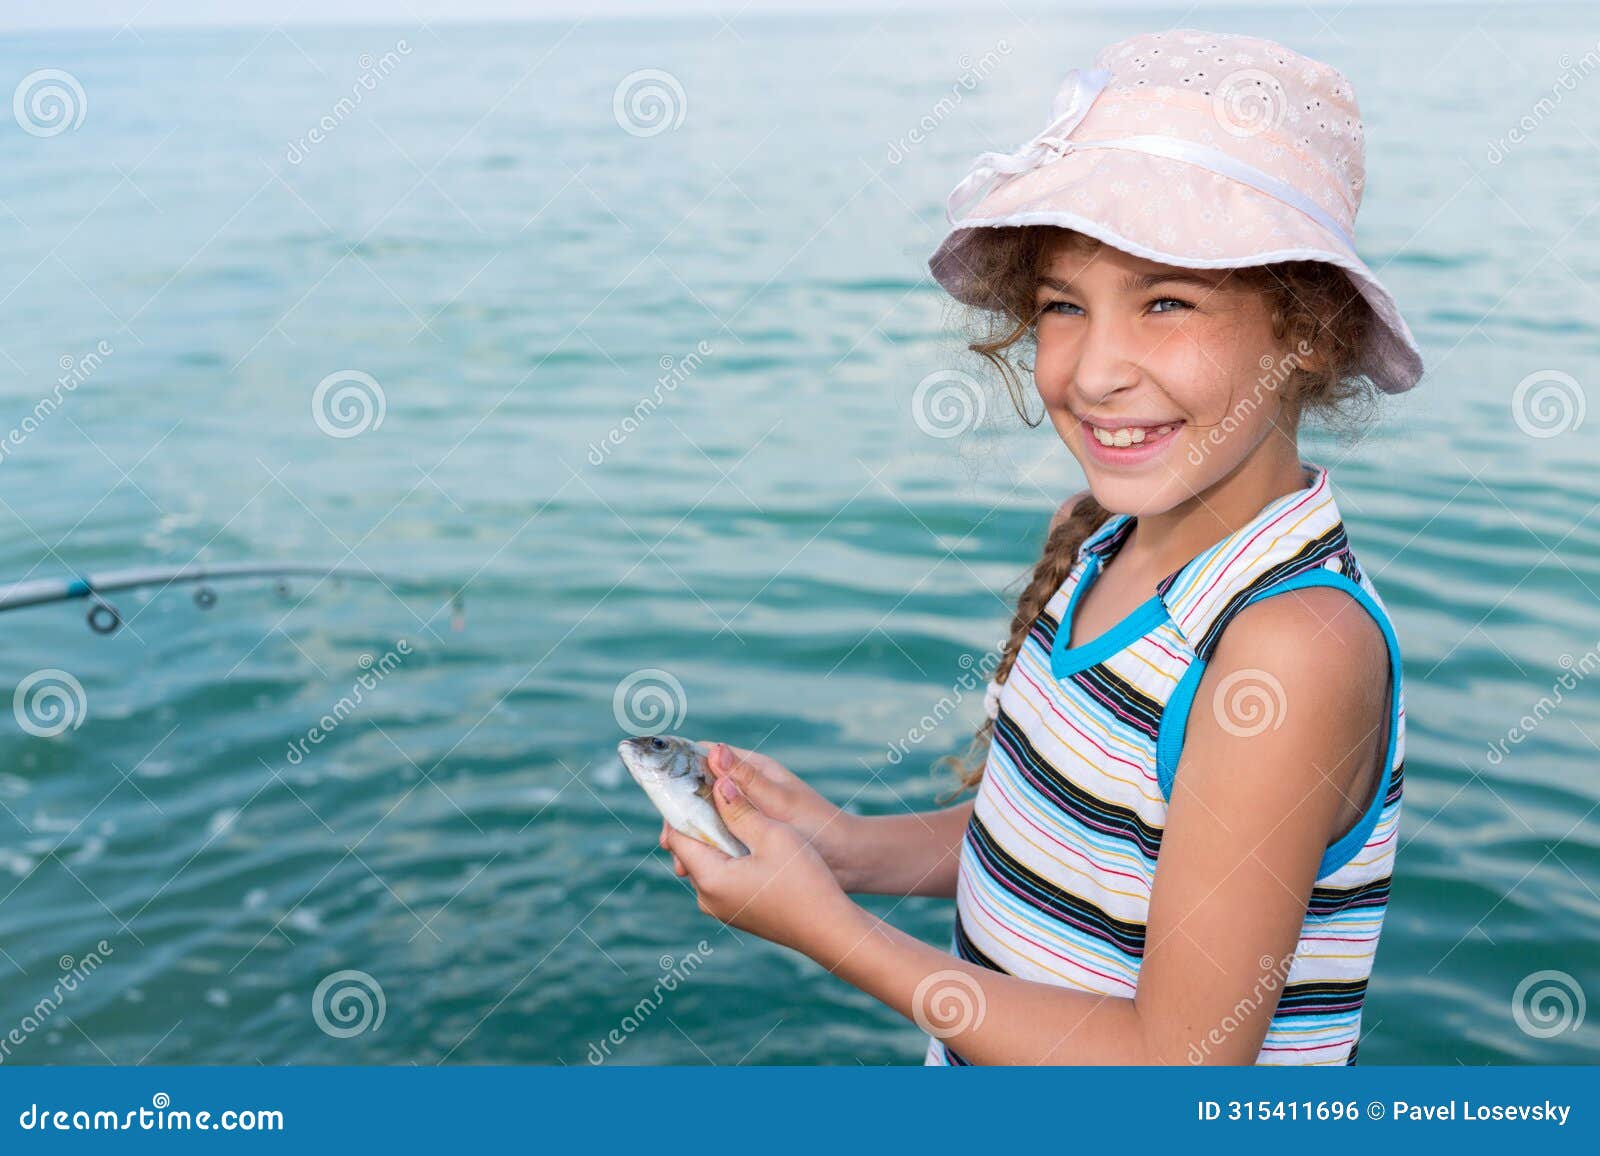 girl holds in hands freshly caught